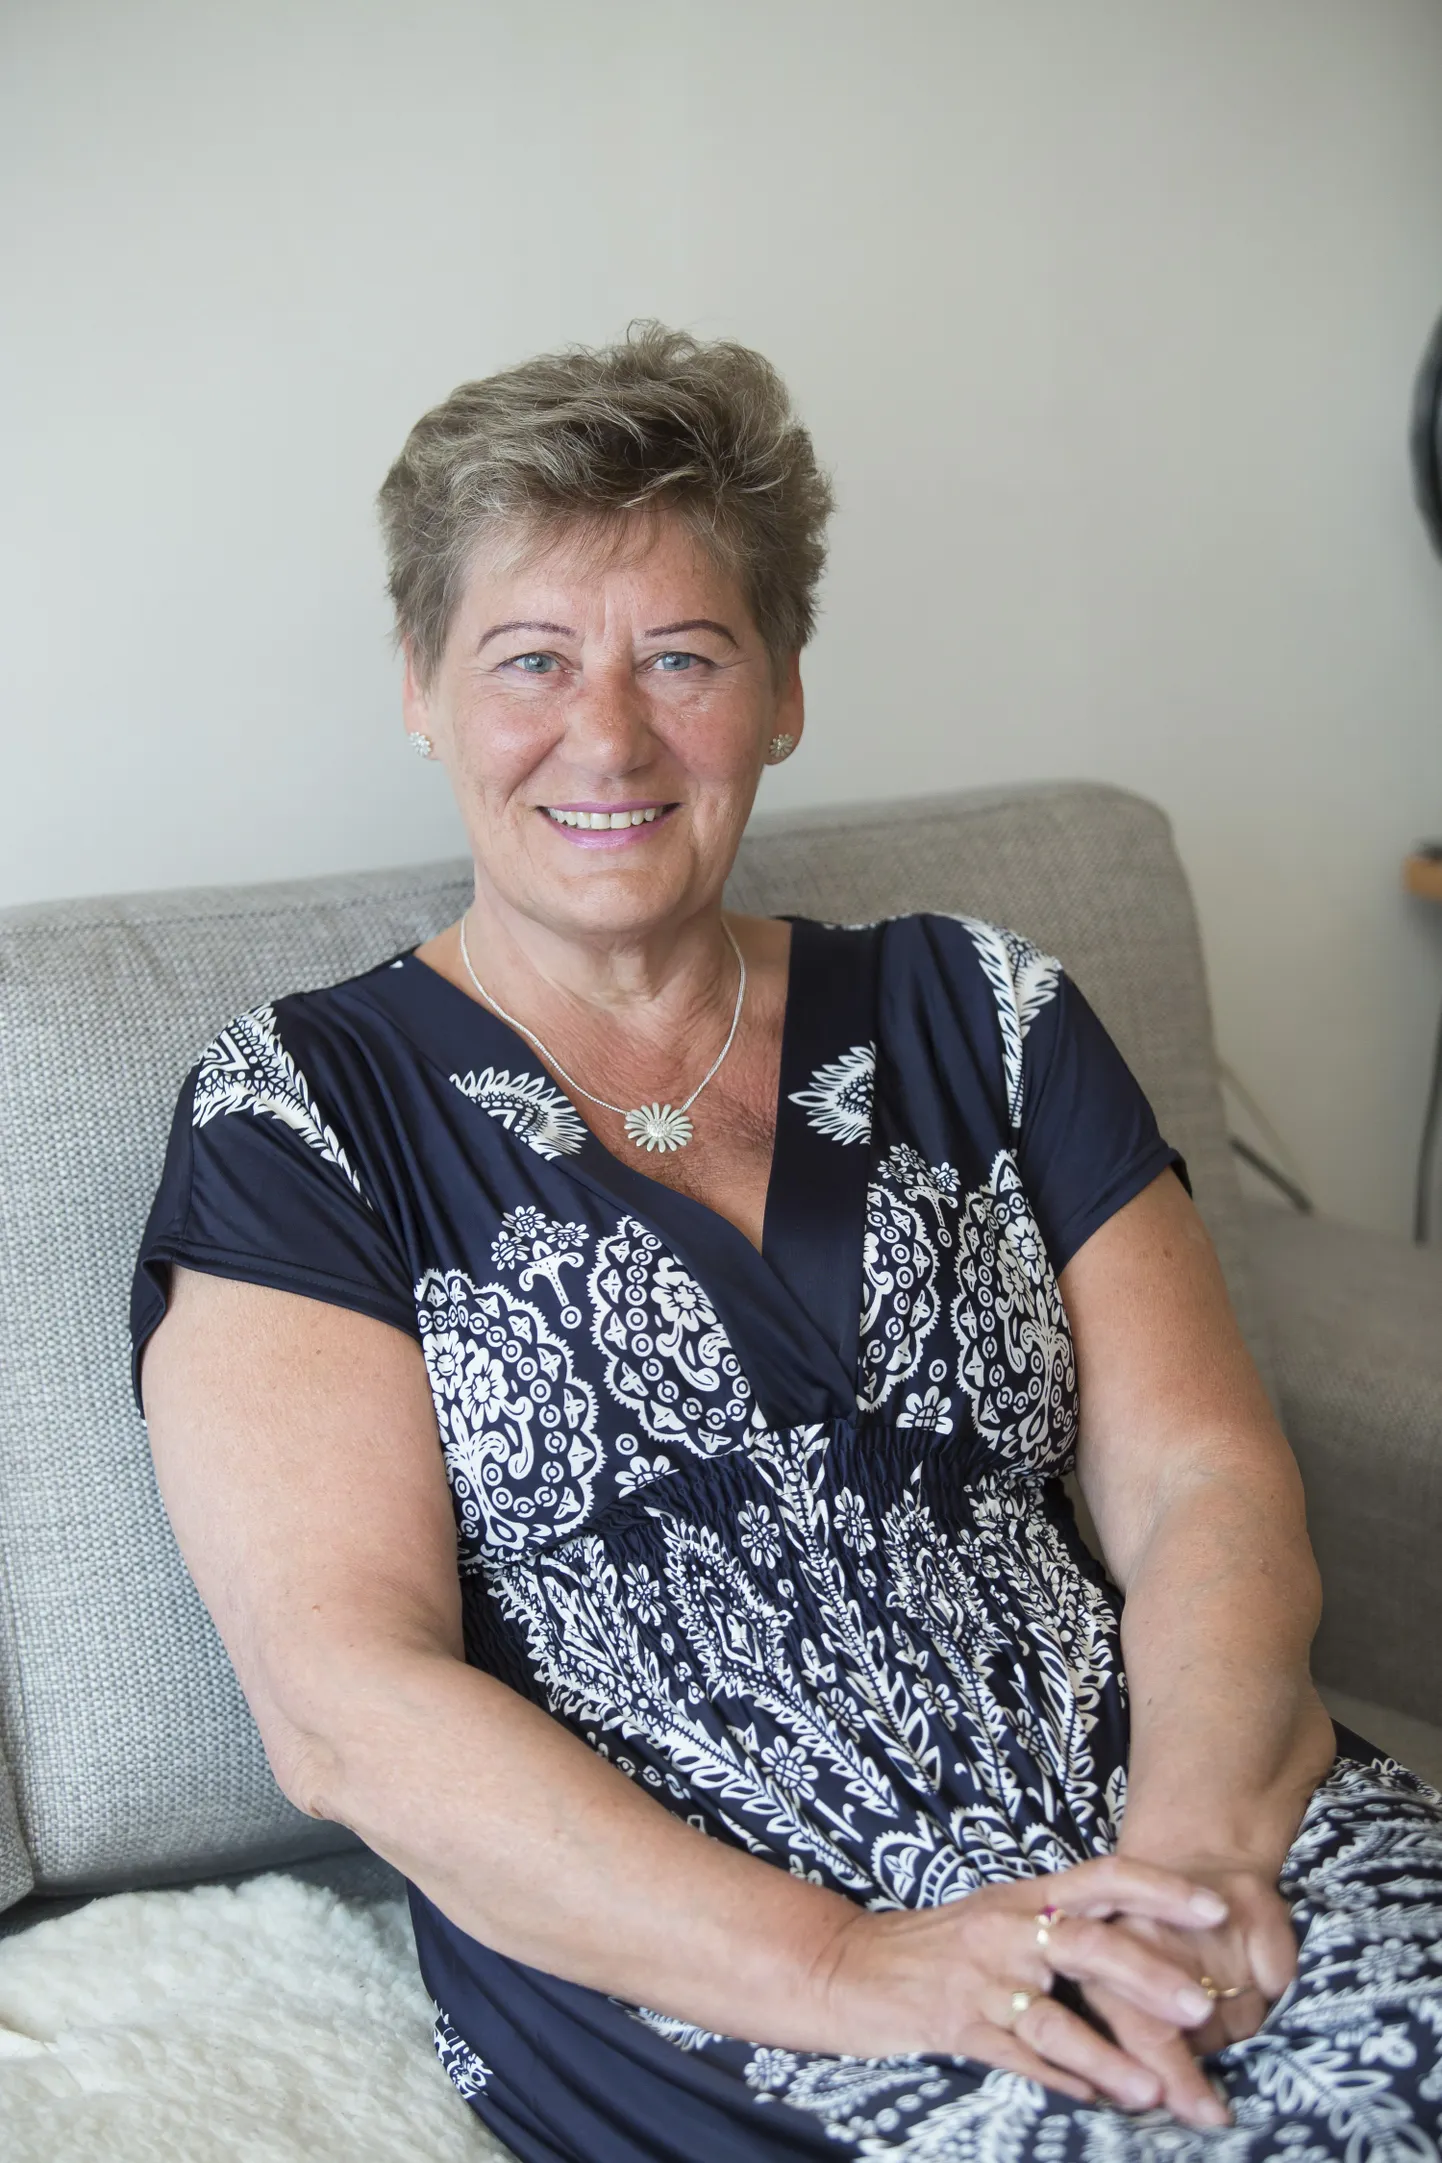 Särav Rakvere reaalgümnaasiumi kauaaegne õppealajuhataja Liivi ­Bauer naudib pensionipõlve ja seab vahvaid eluplaane.